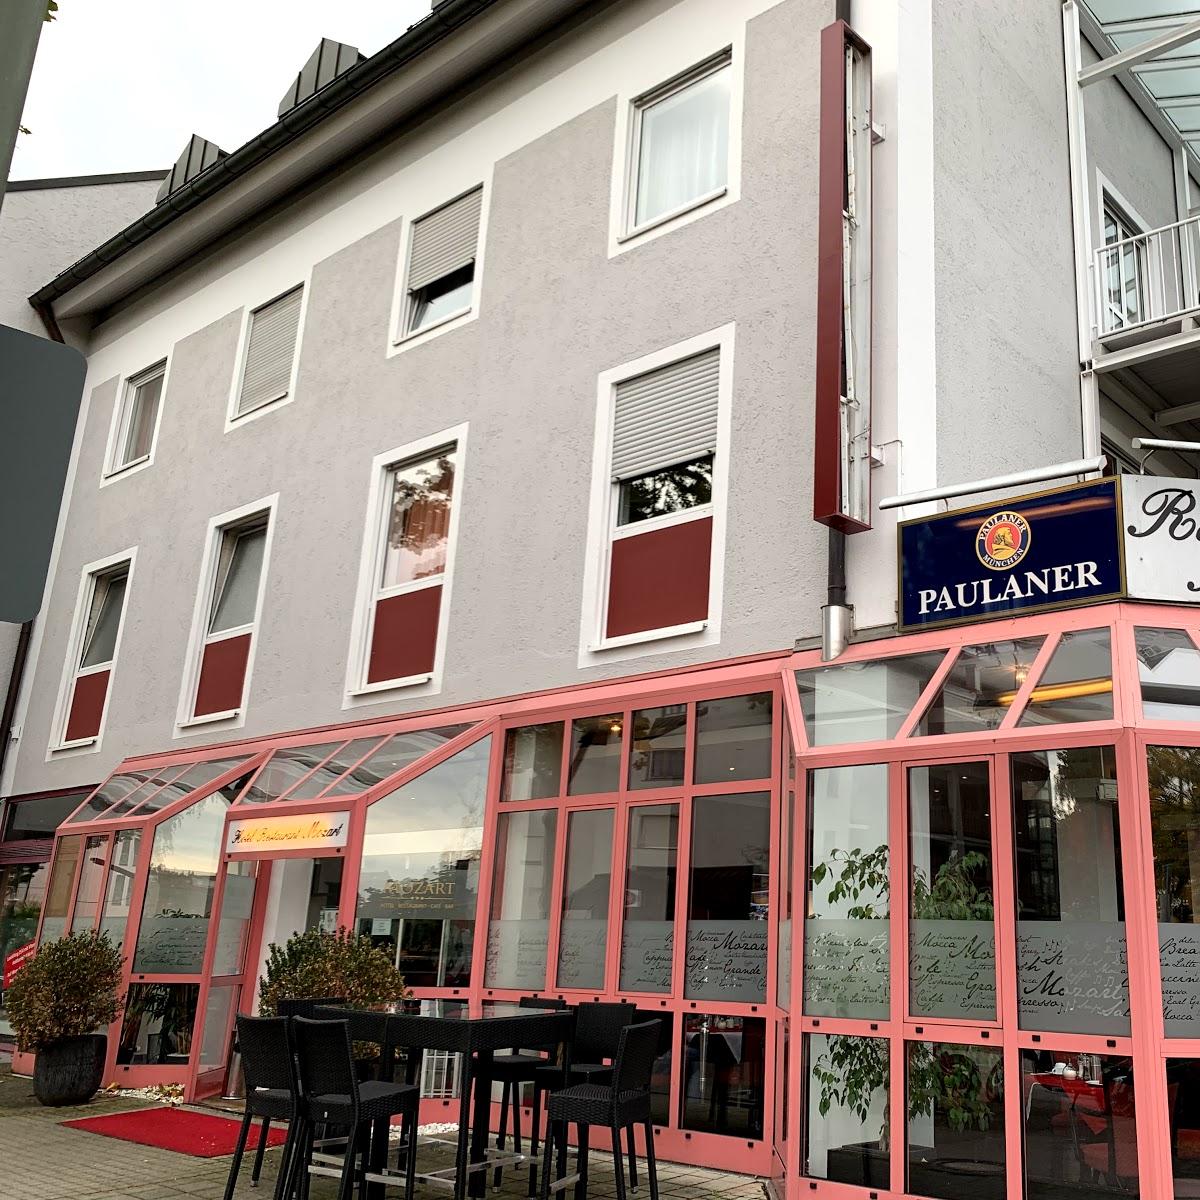 Restaurant "Hotel Mozart -" in Traunreut